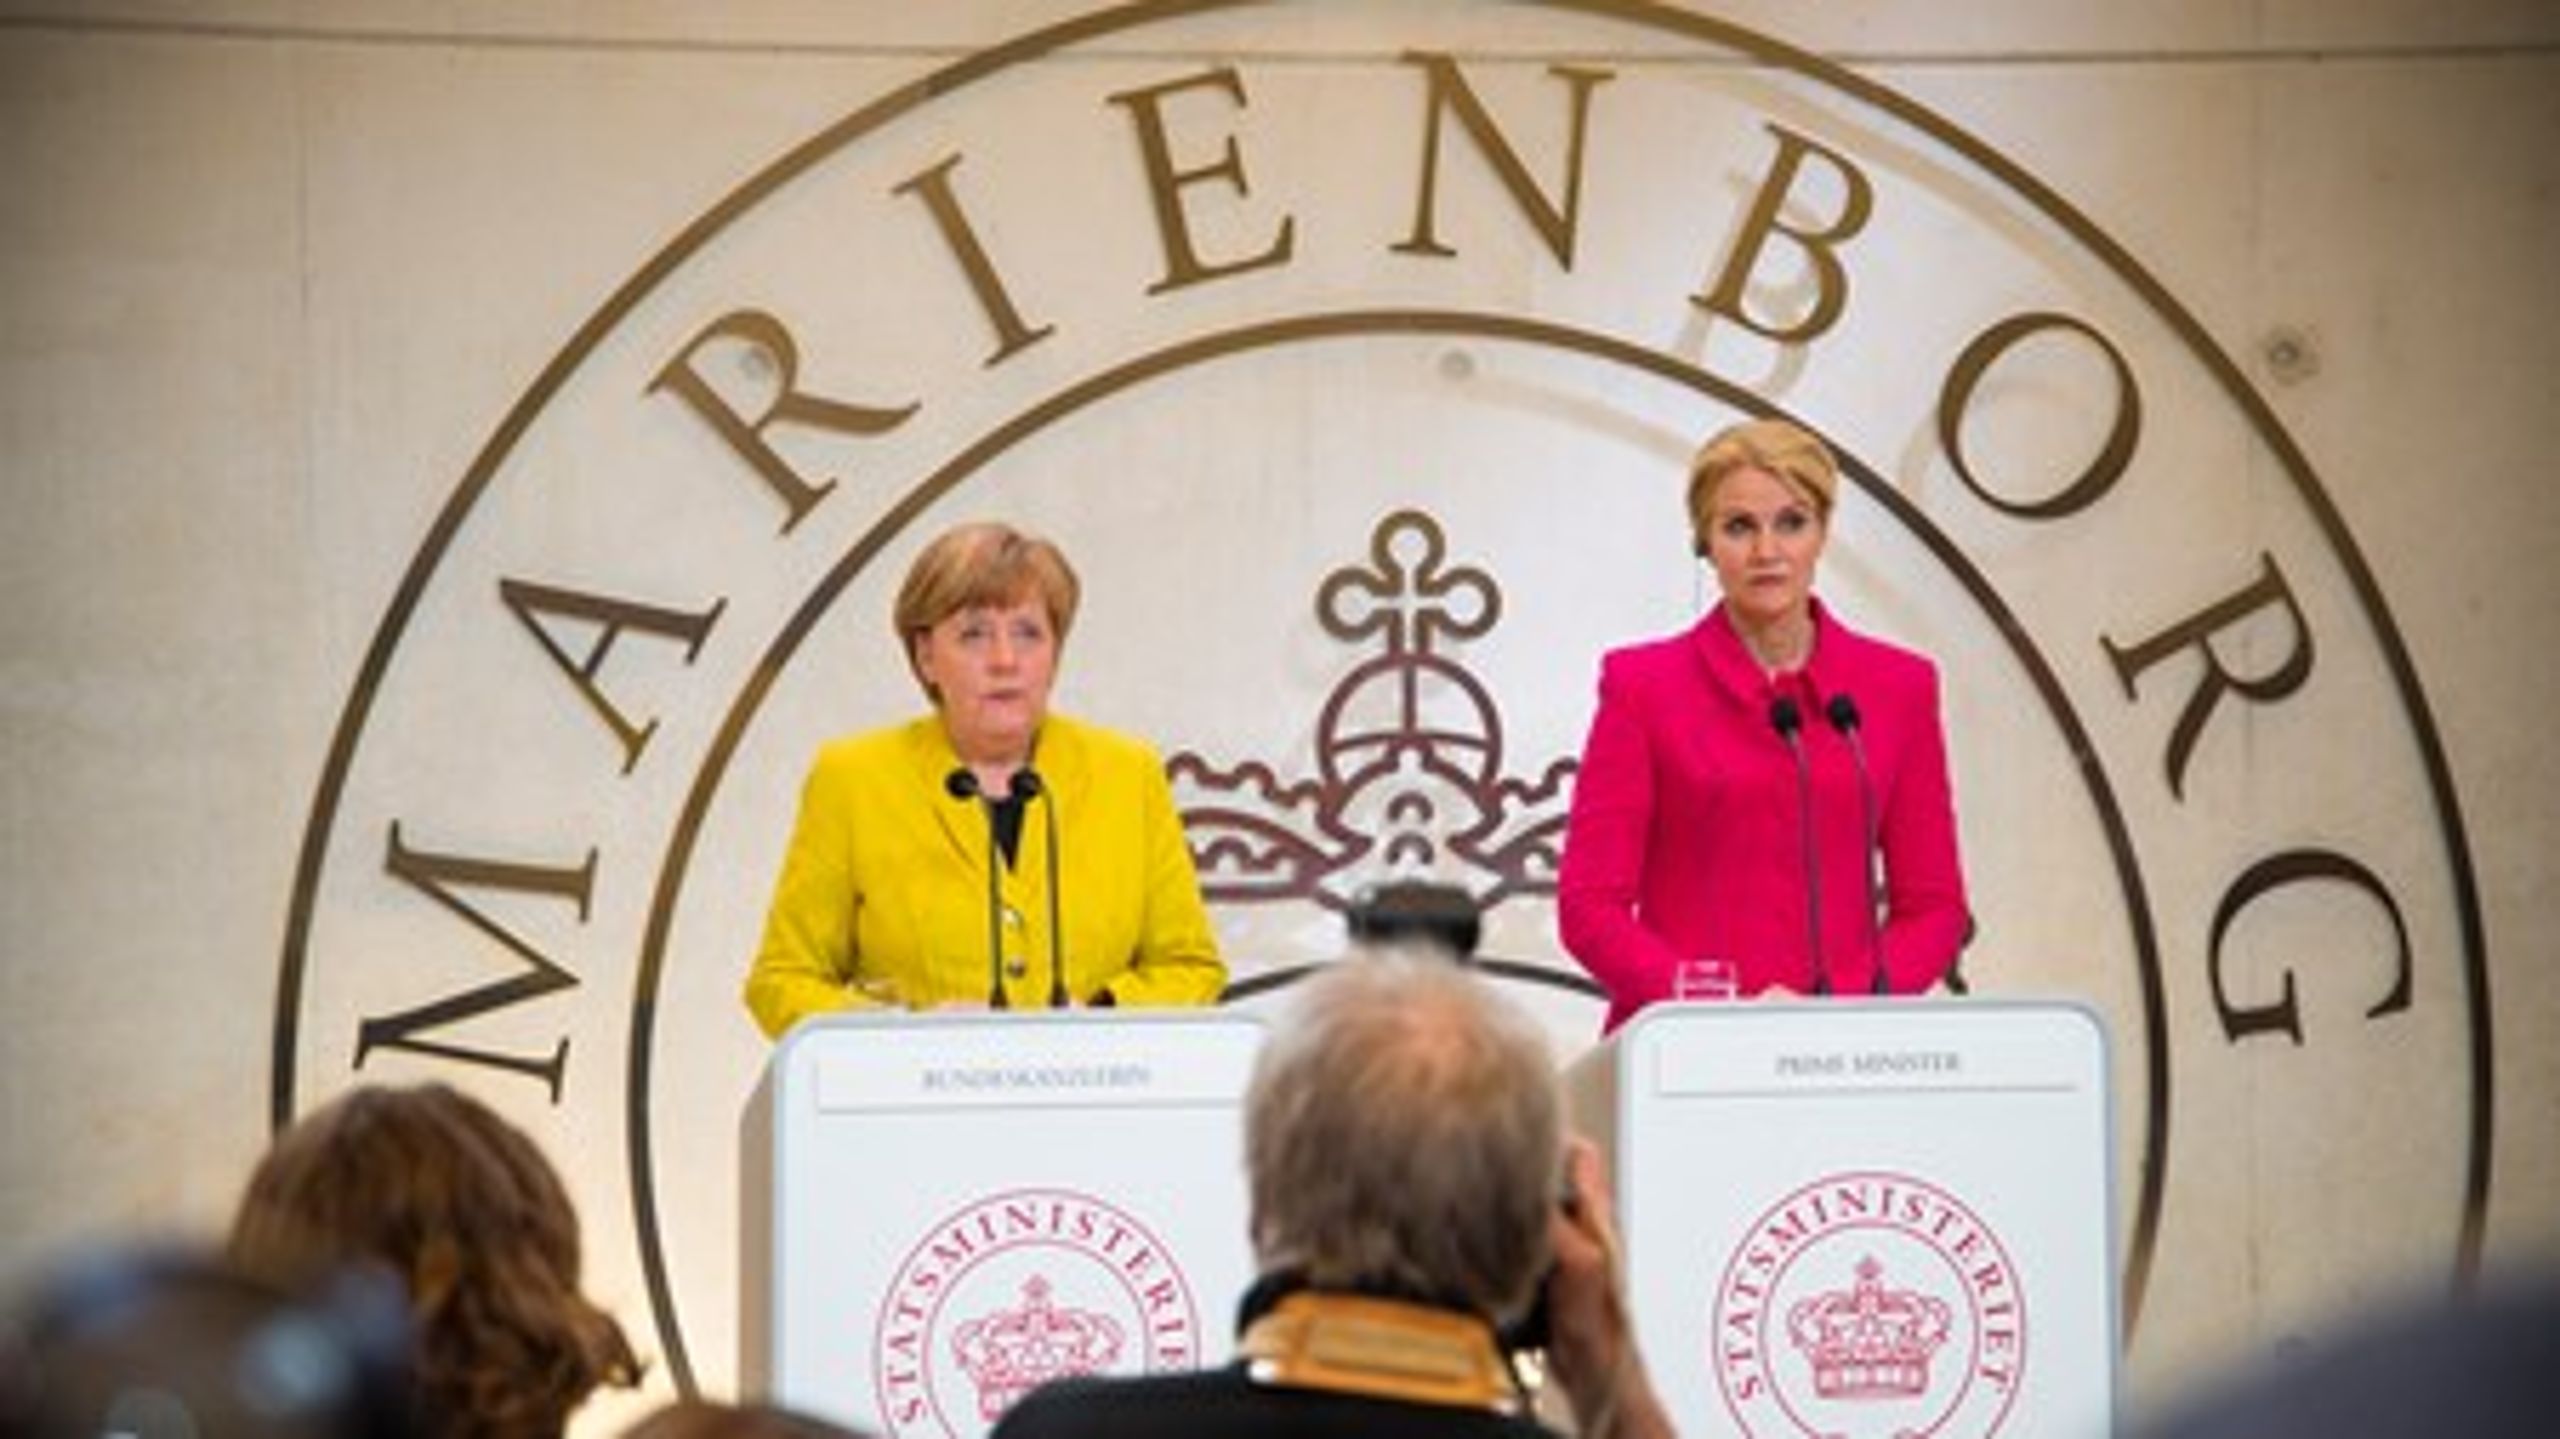 Tirsdag besøgte den tyske kansler Angela Merkel Danmark. "Det har været nogle festlige dage for statsminister Helle Thorning-Schmidt med masser af photo-opportunities og pæne høflige spørgsmål fra pressen, men nu er det ved at være slut," skriver Jarl Cordua.&nbsp;